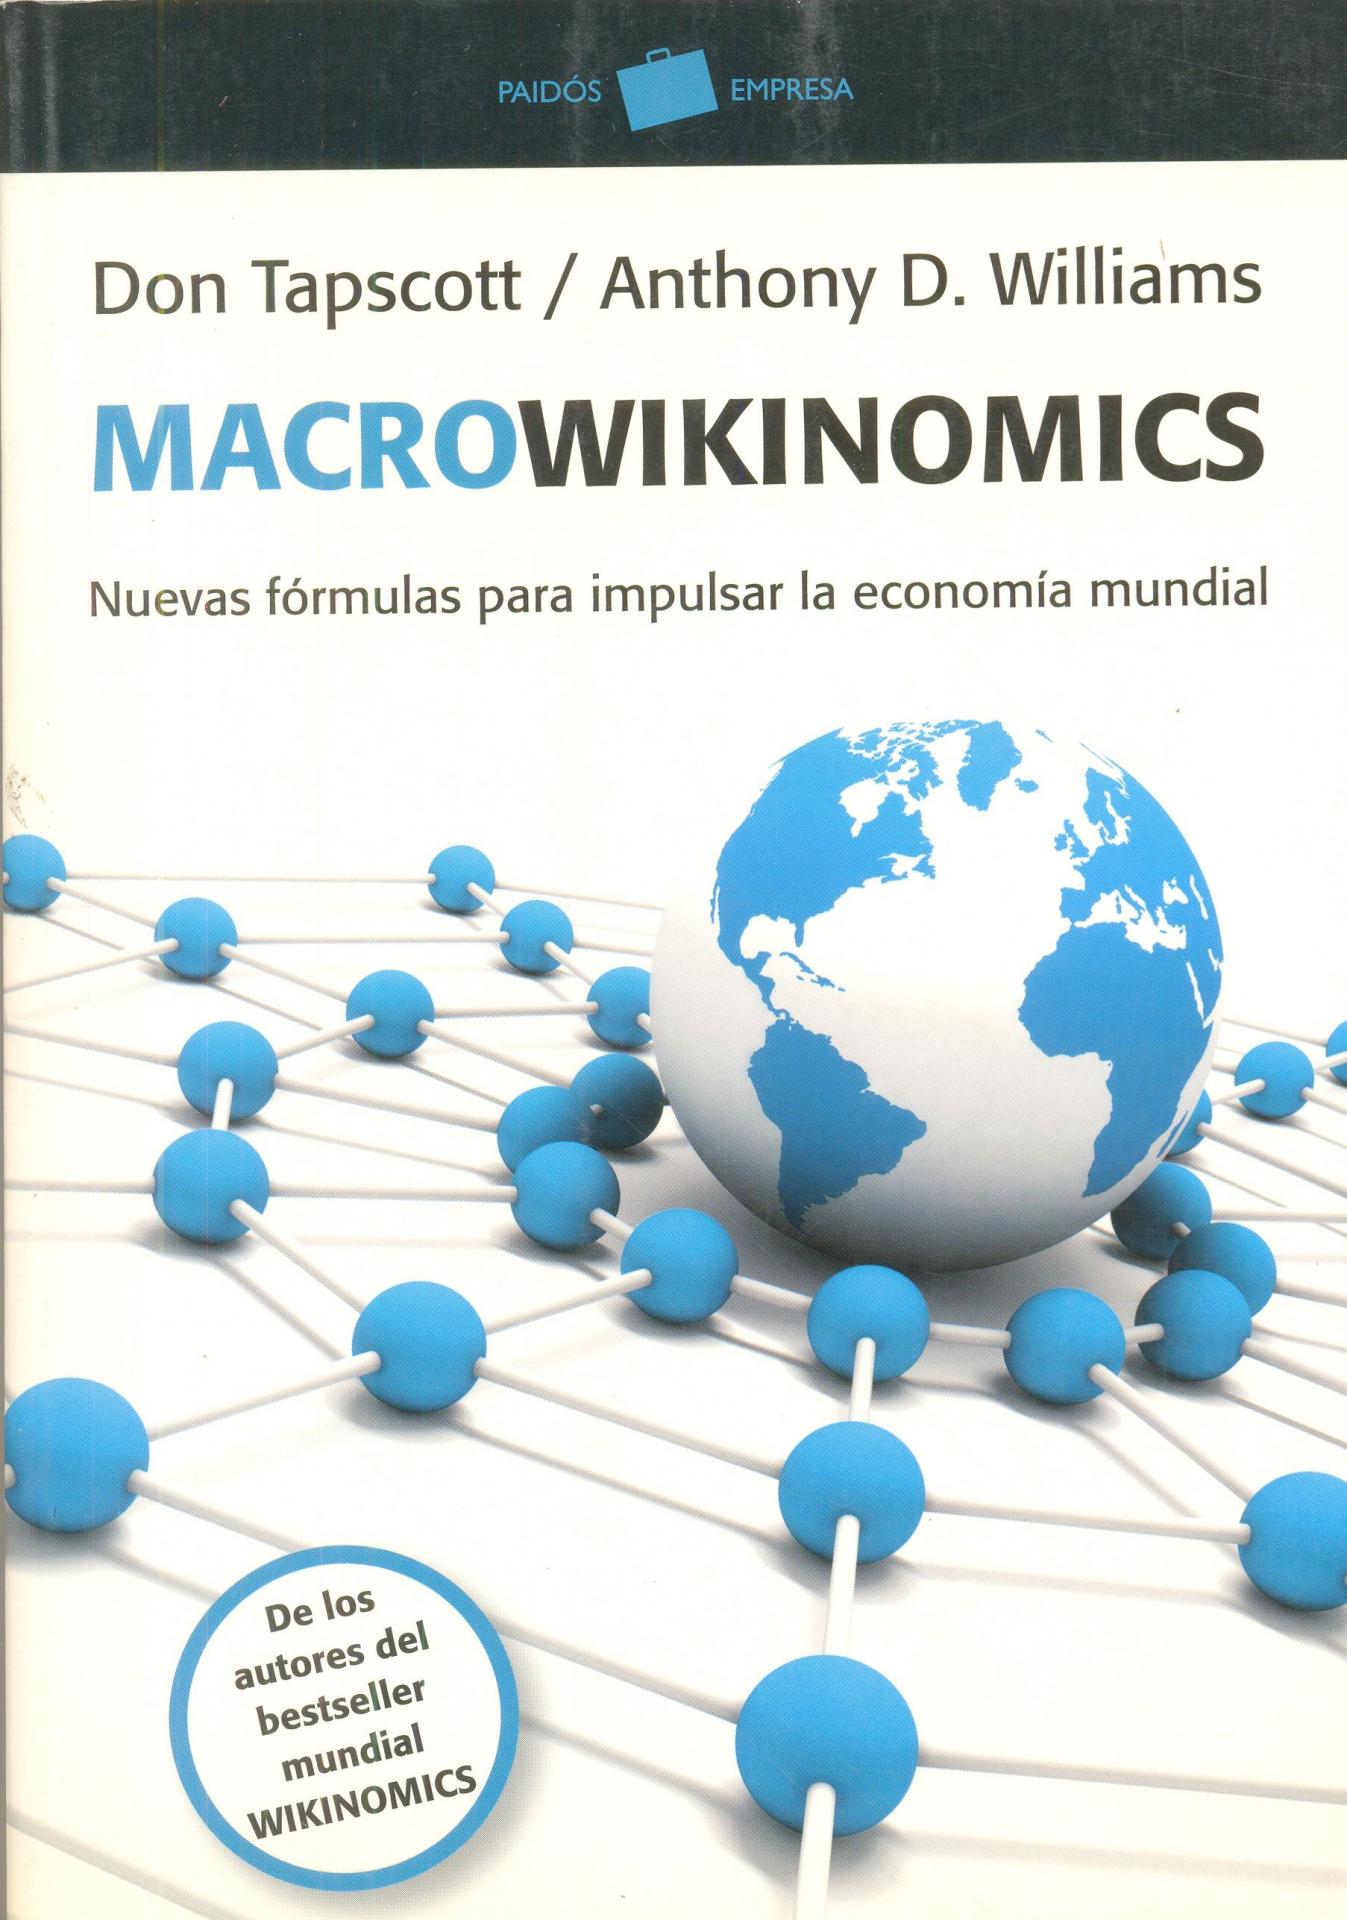 MACROWIKINOMICS. Nuevas fórmulas para impulsar la economía mundial. Tapscott, D y Williams, A.D.